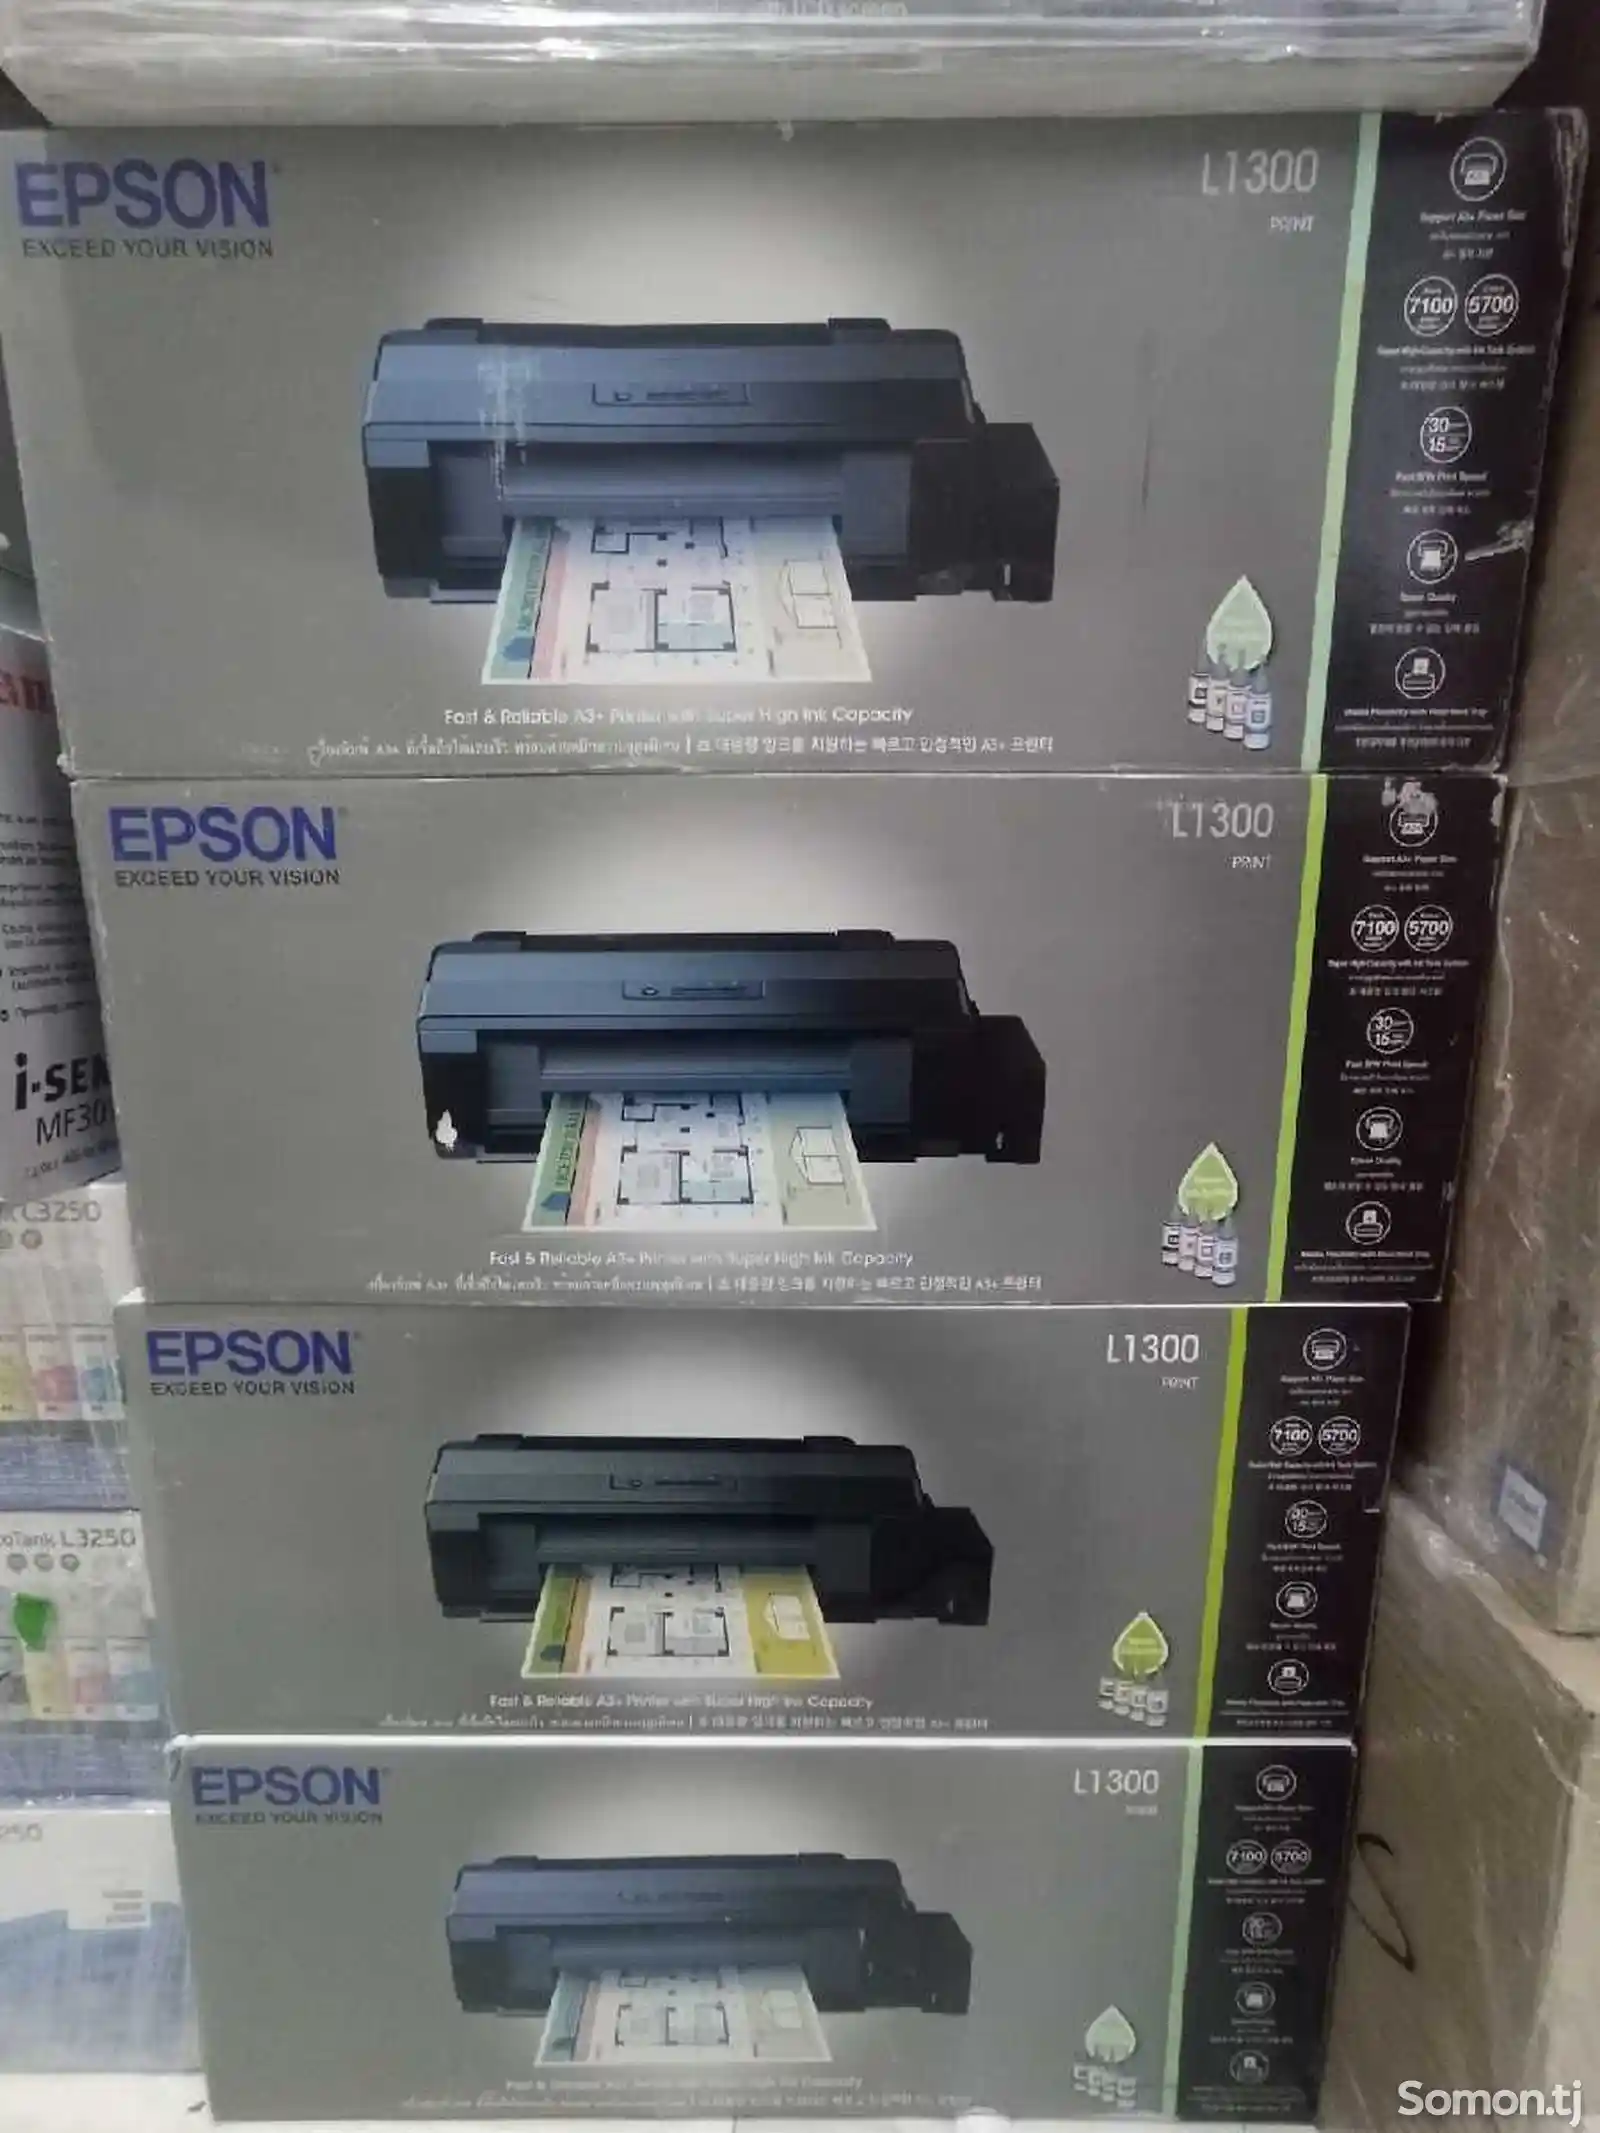 Принтер epson L1300 цветной, формат печати А3+-1